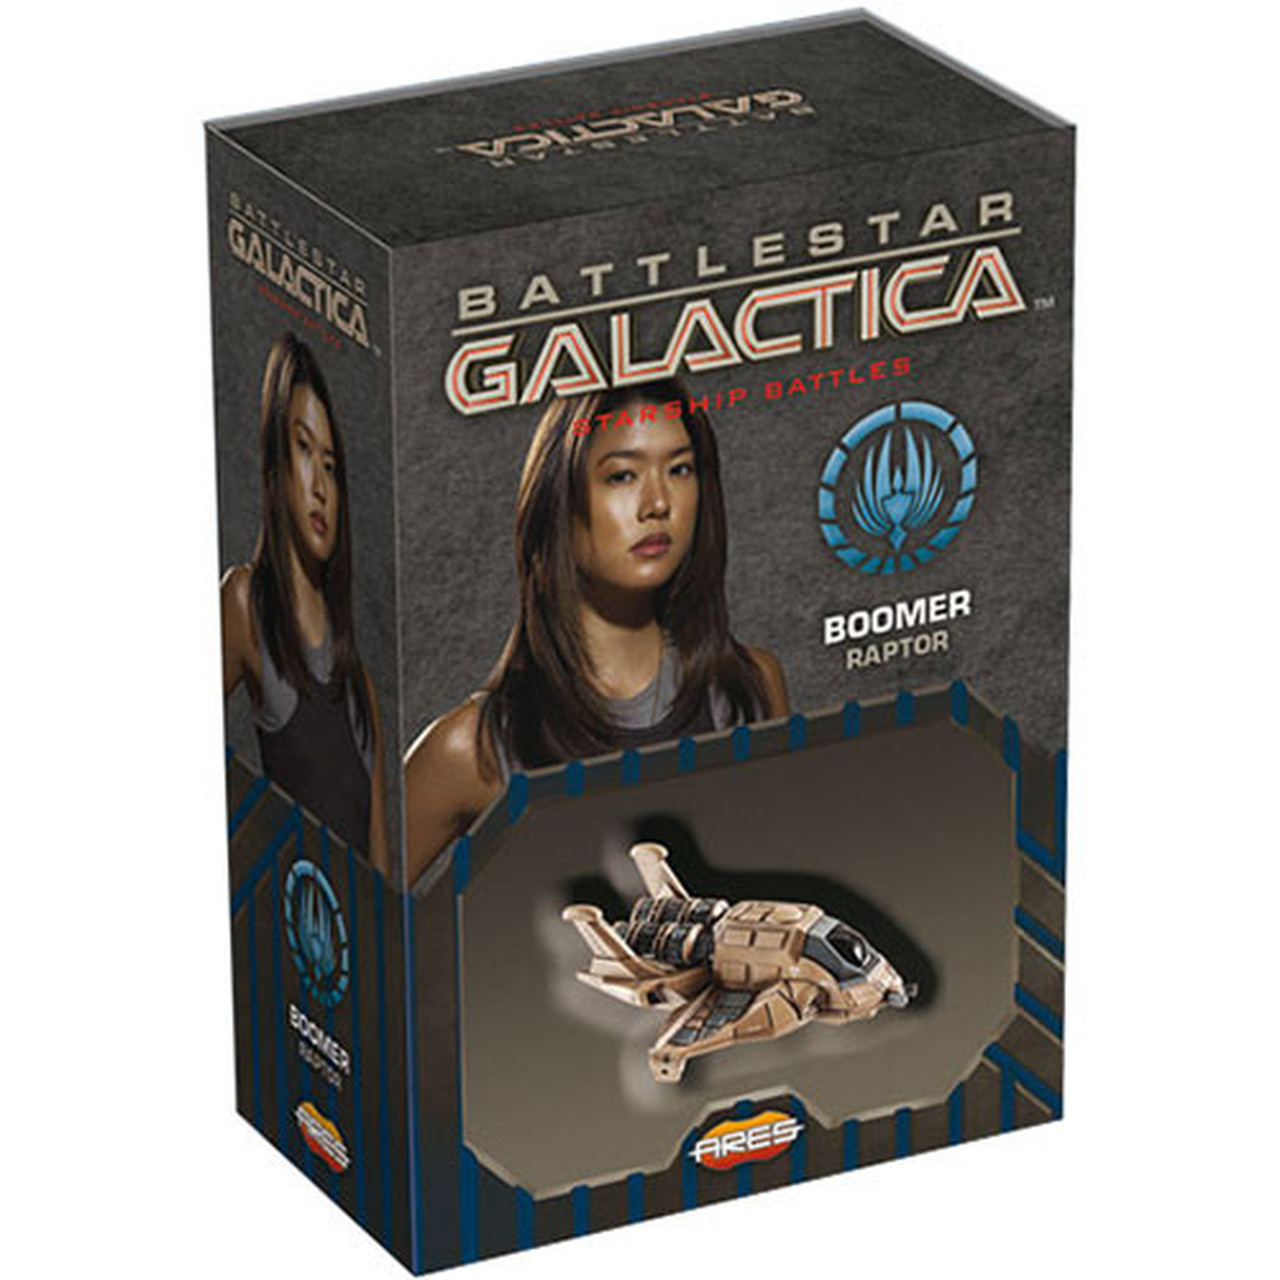 Battlestar Galactica - Starship Battles Uitbreiding: Raptor (Boomer) (Bordspellen), Ares Games